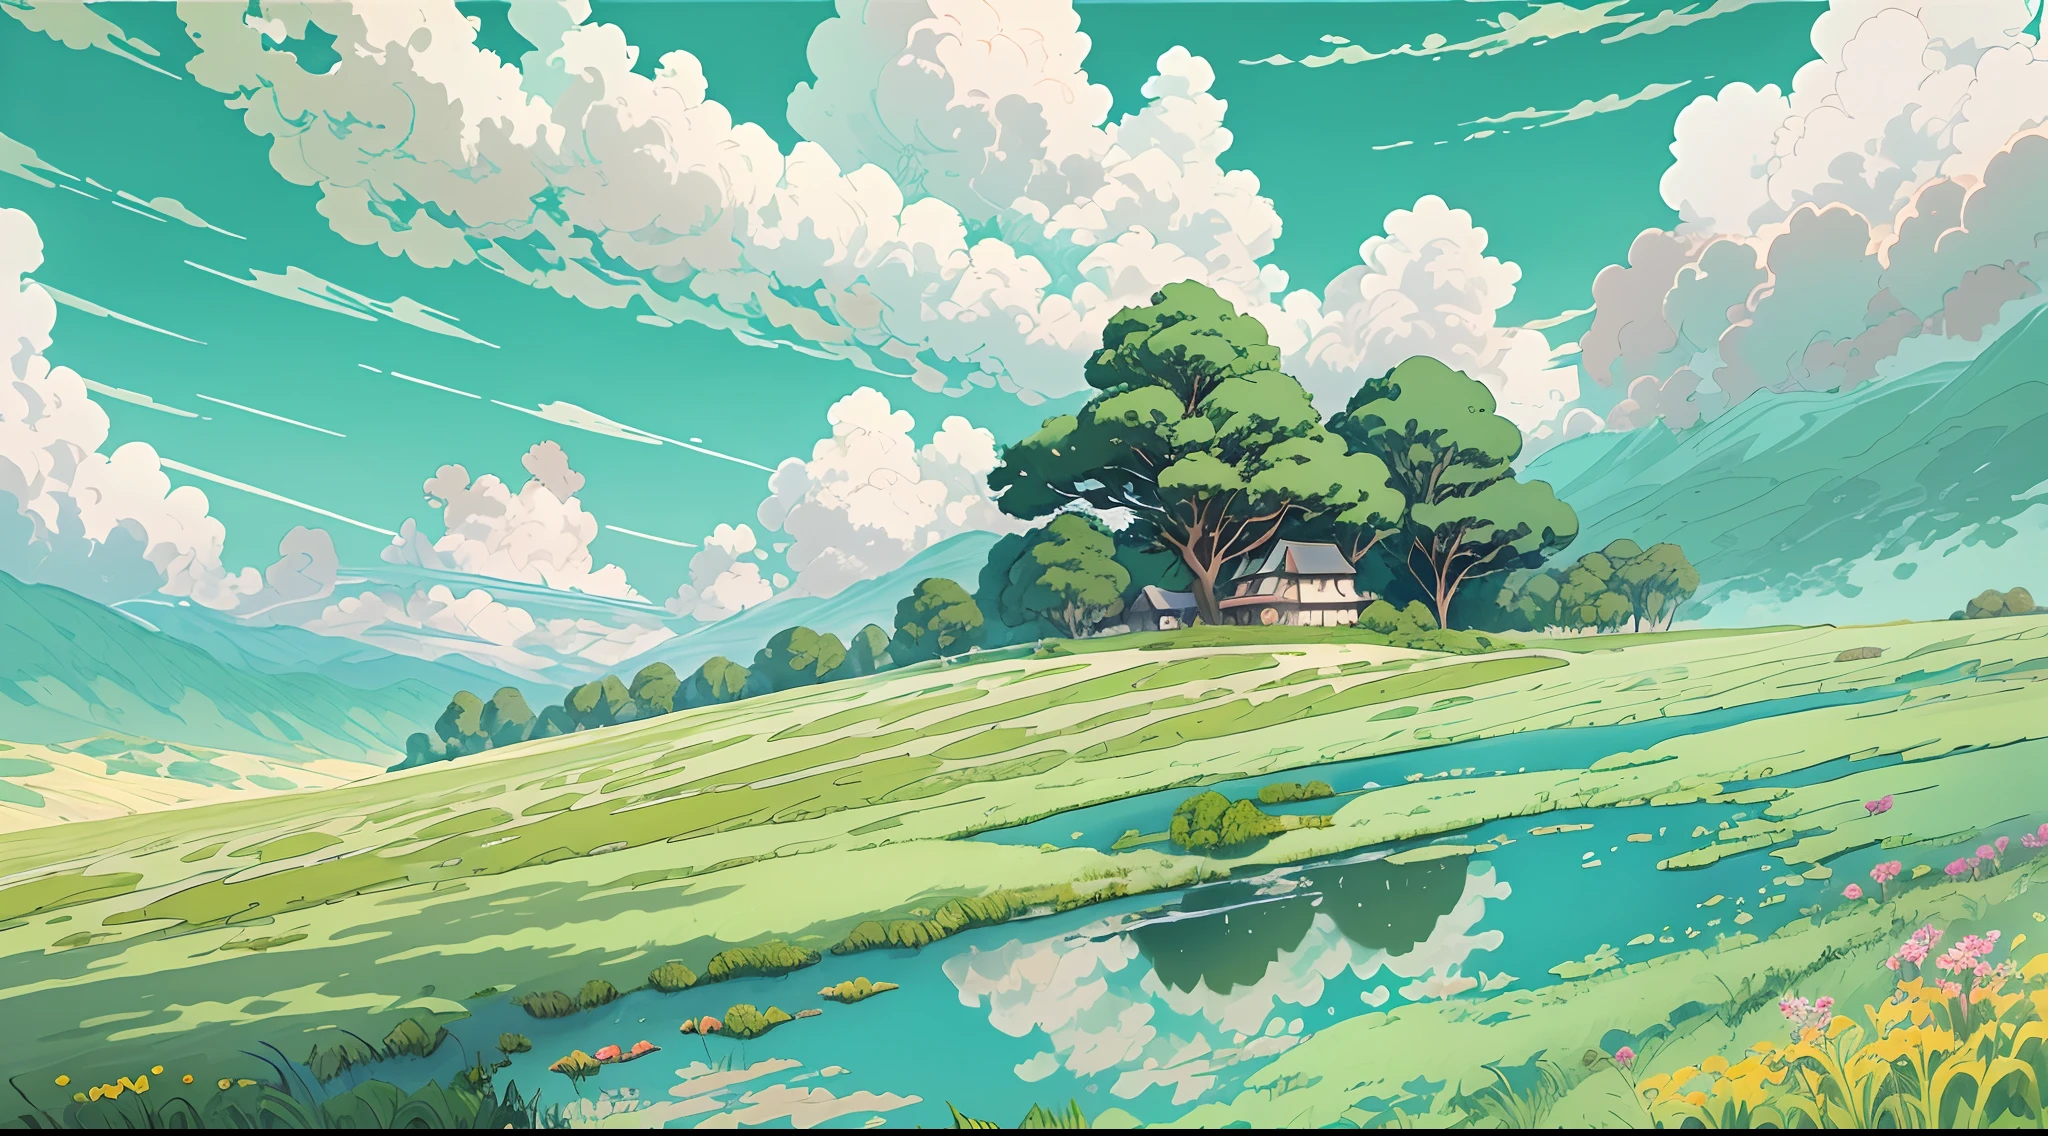 réaliste, authentique, belle et étonnante peinture à l&#39;huile de paysage Studio Ghibli Hayao Miyazaki&#39;Prairie de pétales avec ciel bleu et nuages blancs --v6